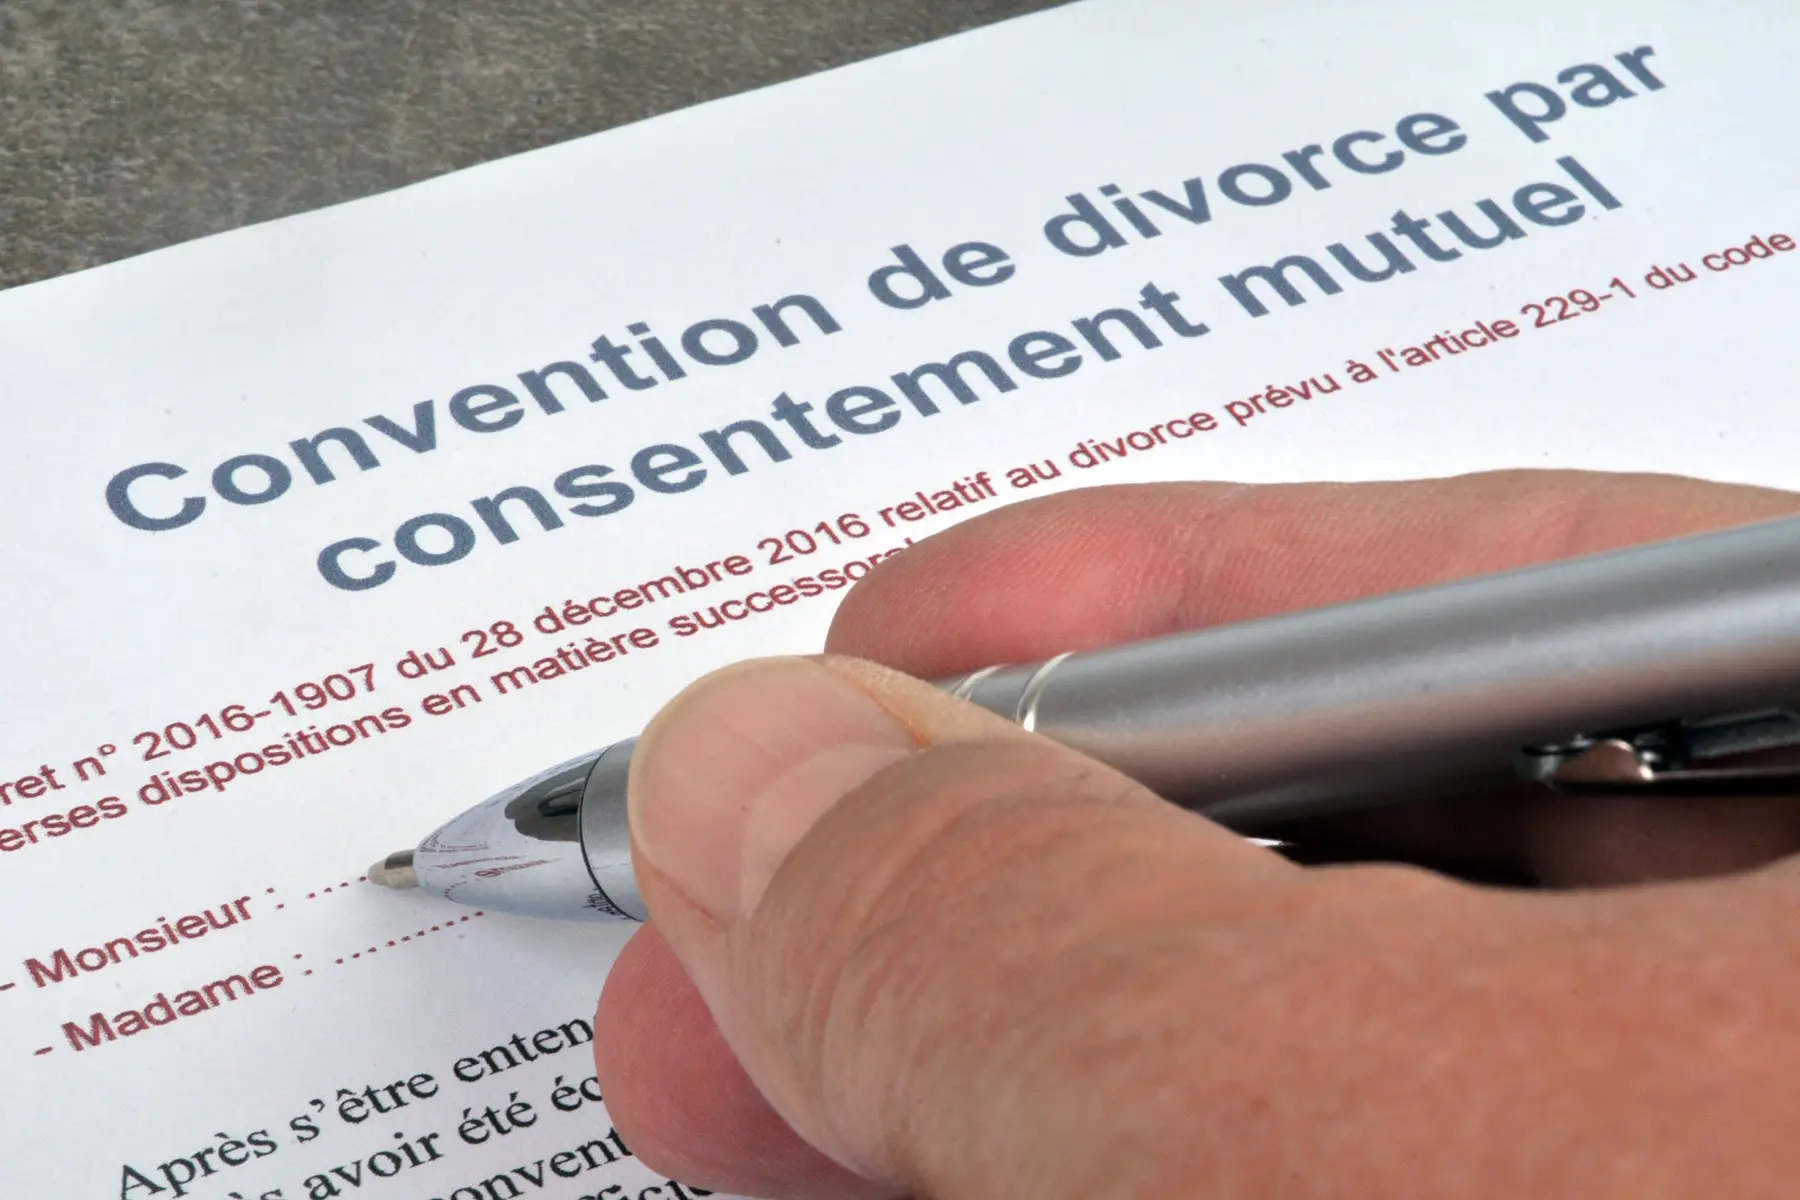 A person signing a document called a Convention de divorce par consentement mutuel